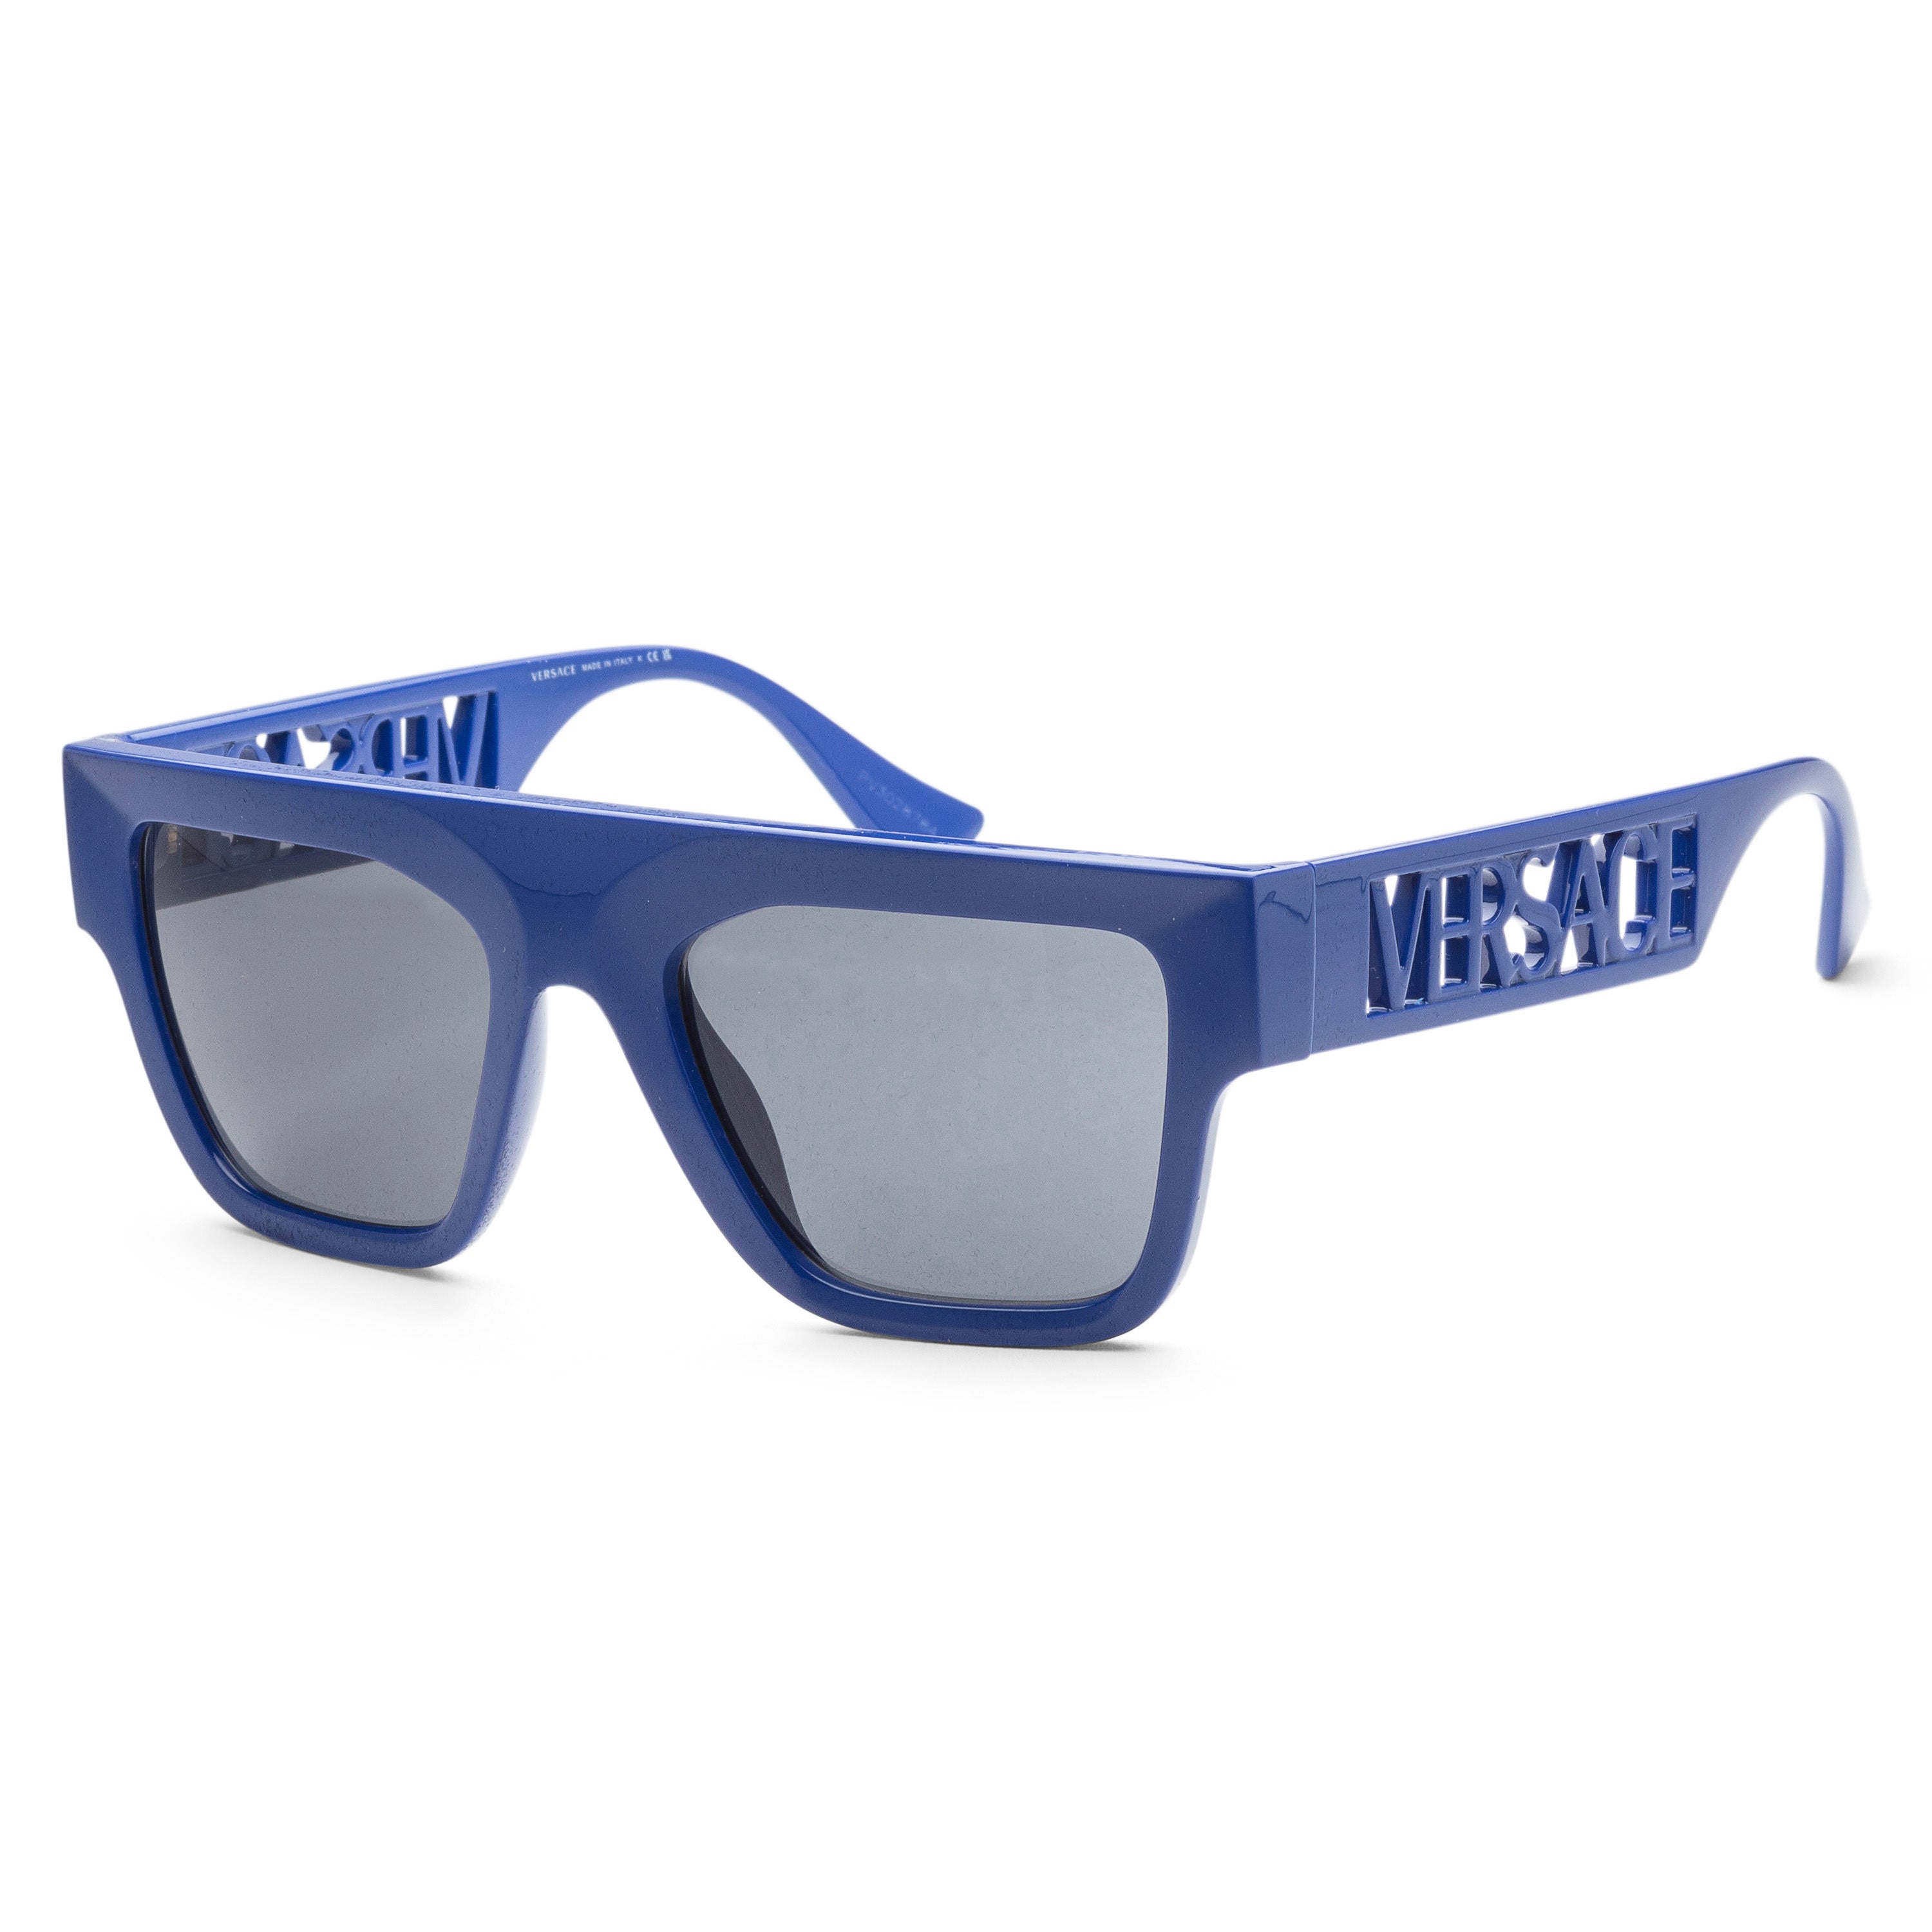 title:Versace Men's VE4430U-529487 Fashion 53mm Bluette Sunglasses;color:Dark Grey Lens, Bluette Frame